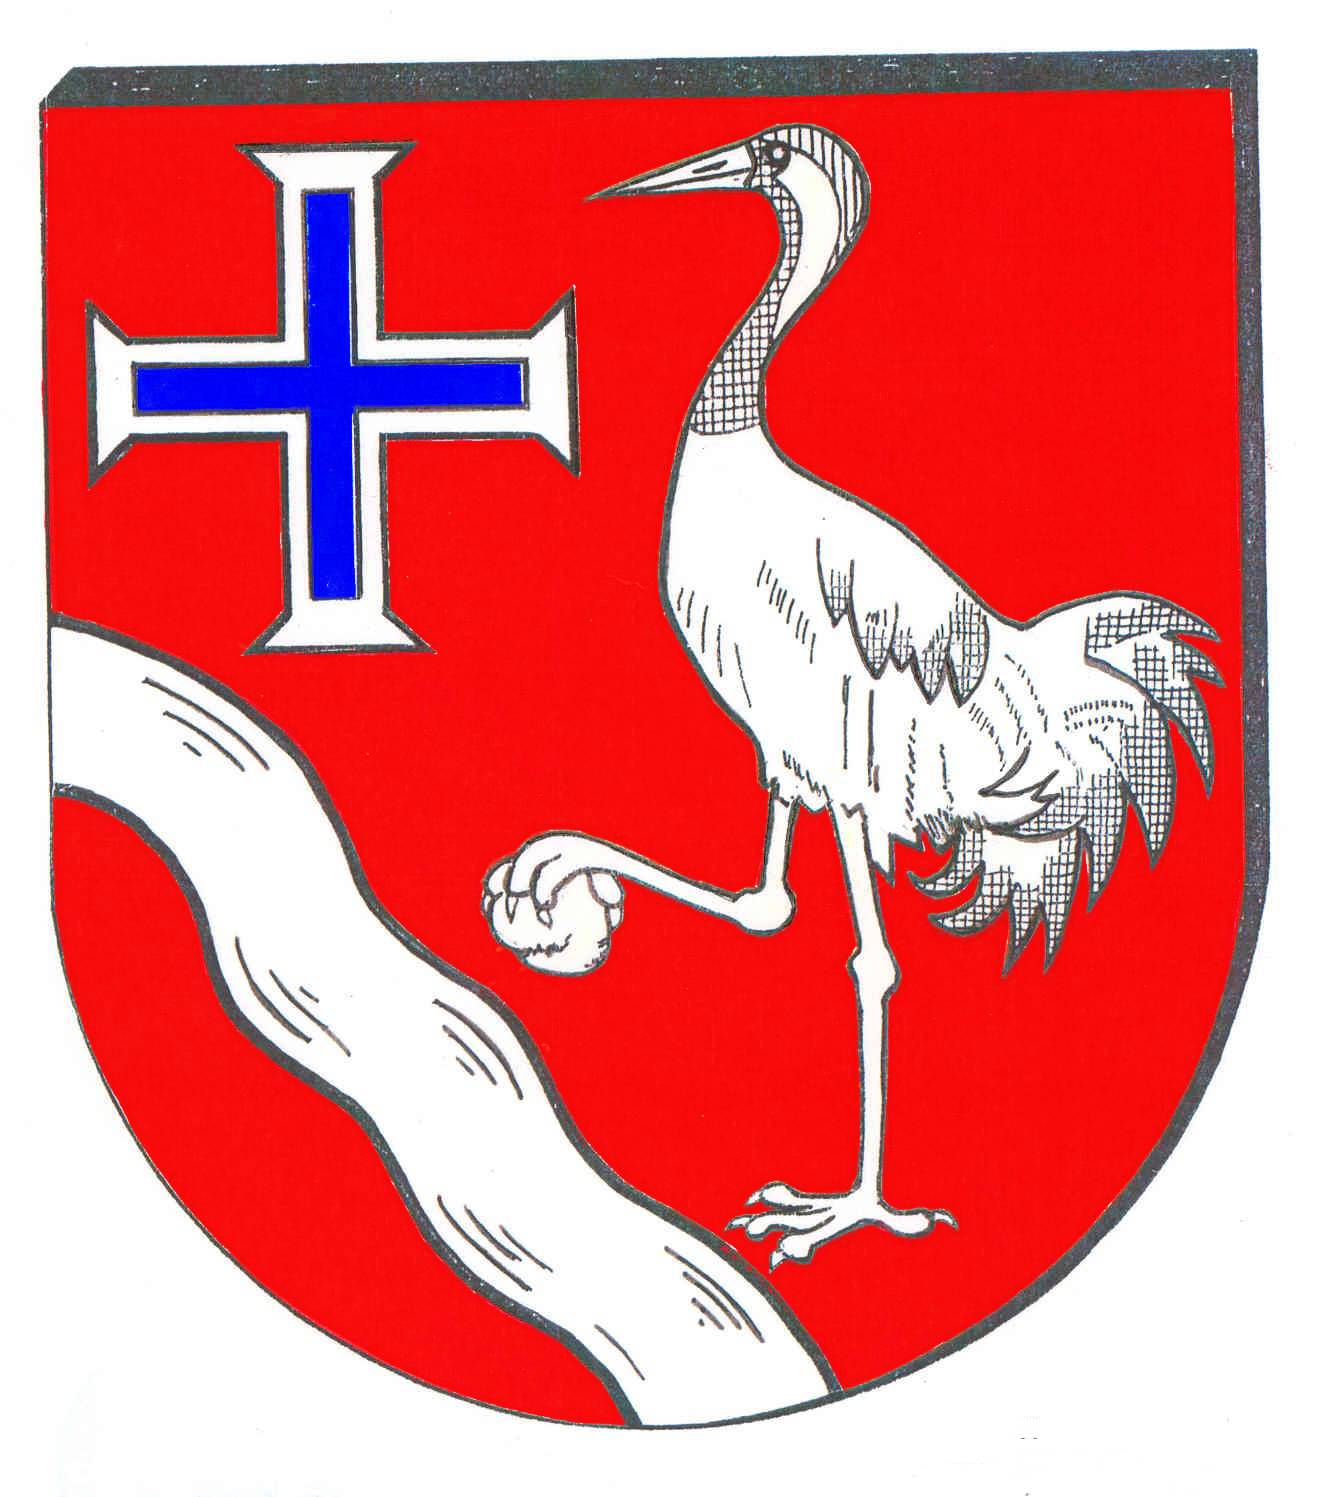 Wappen Gemeinde Kuddewörde, Kreis Herzogtum Lauenburg